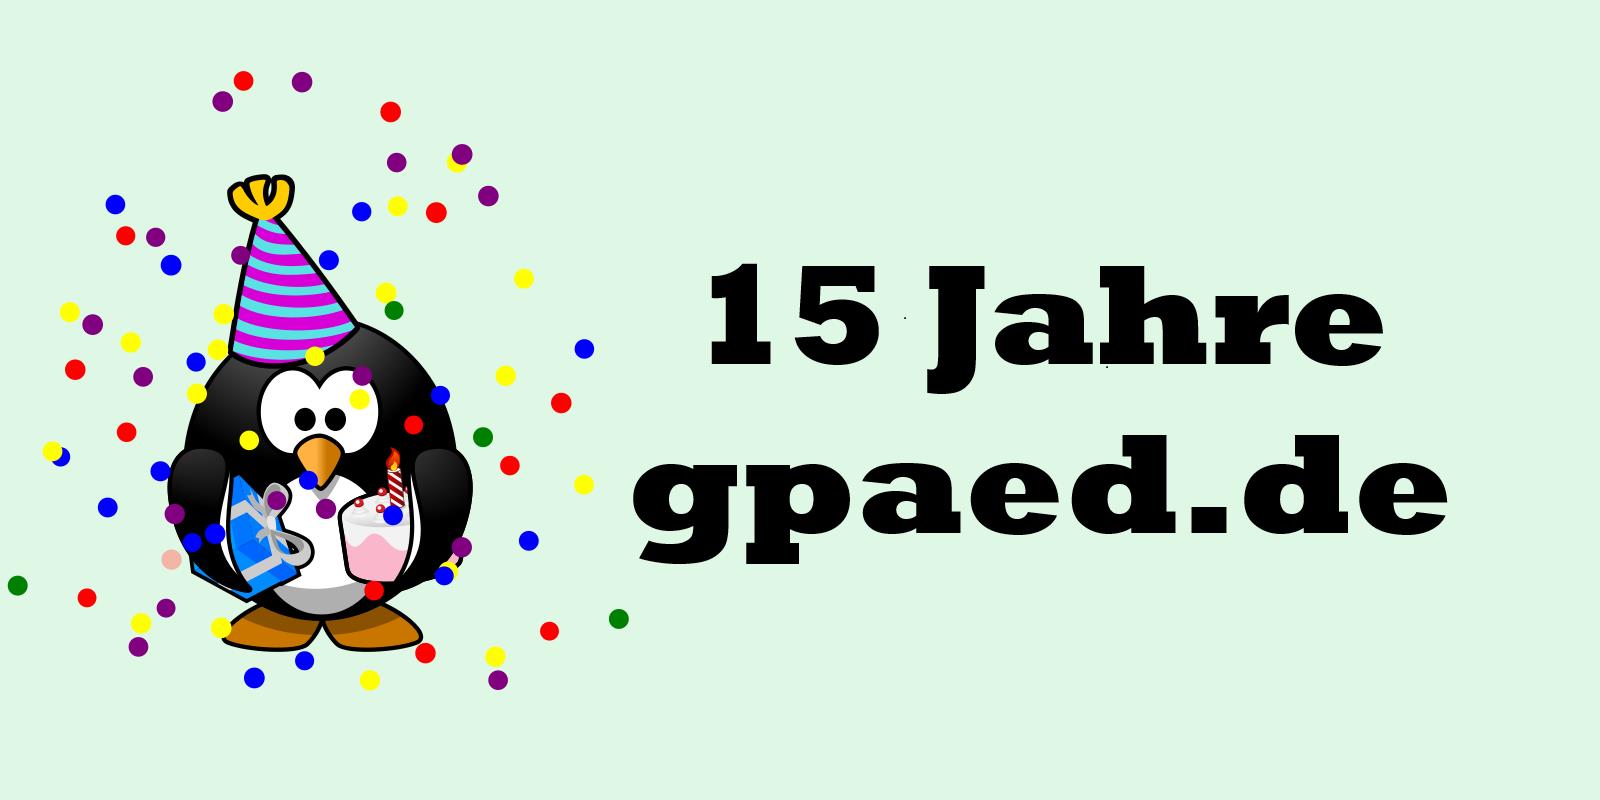 15 jahre • 15 Jahre gpaed.de